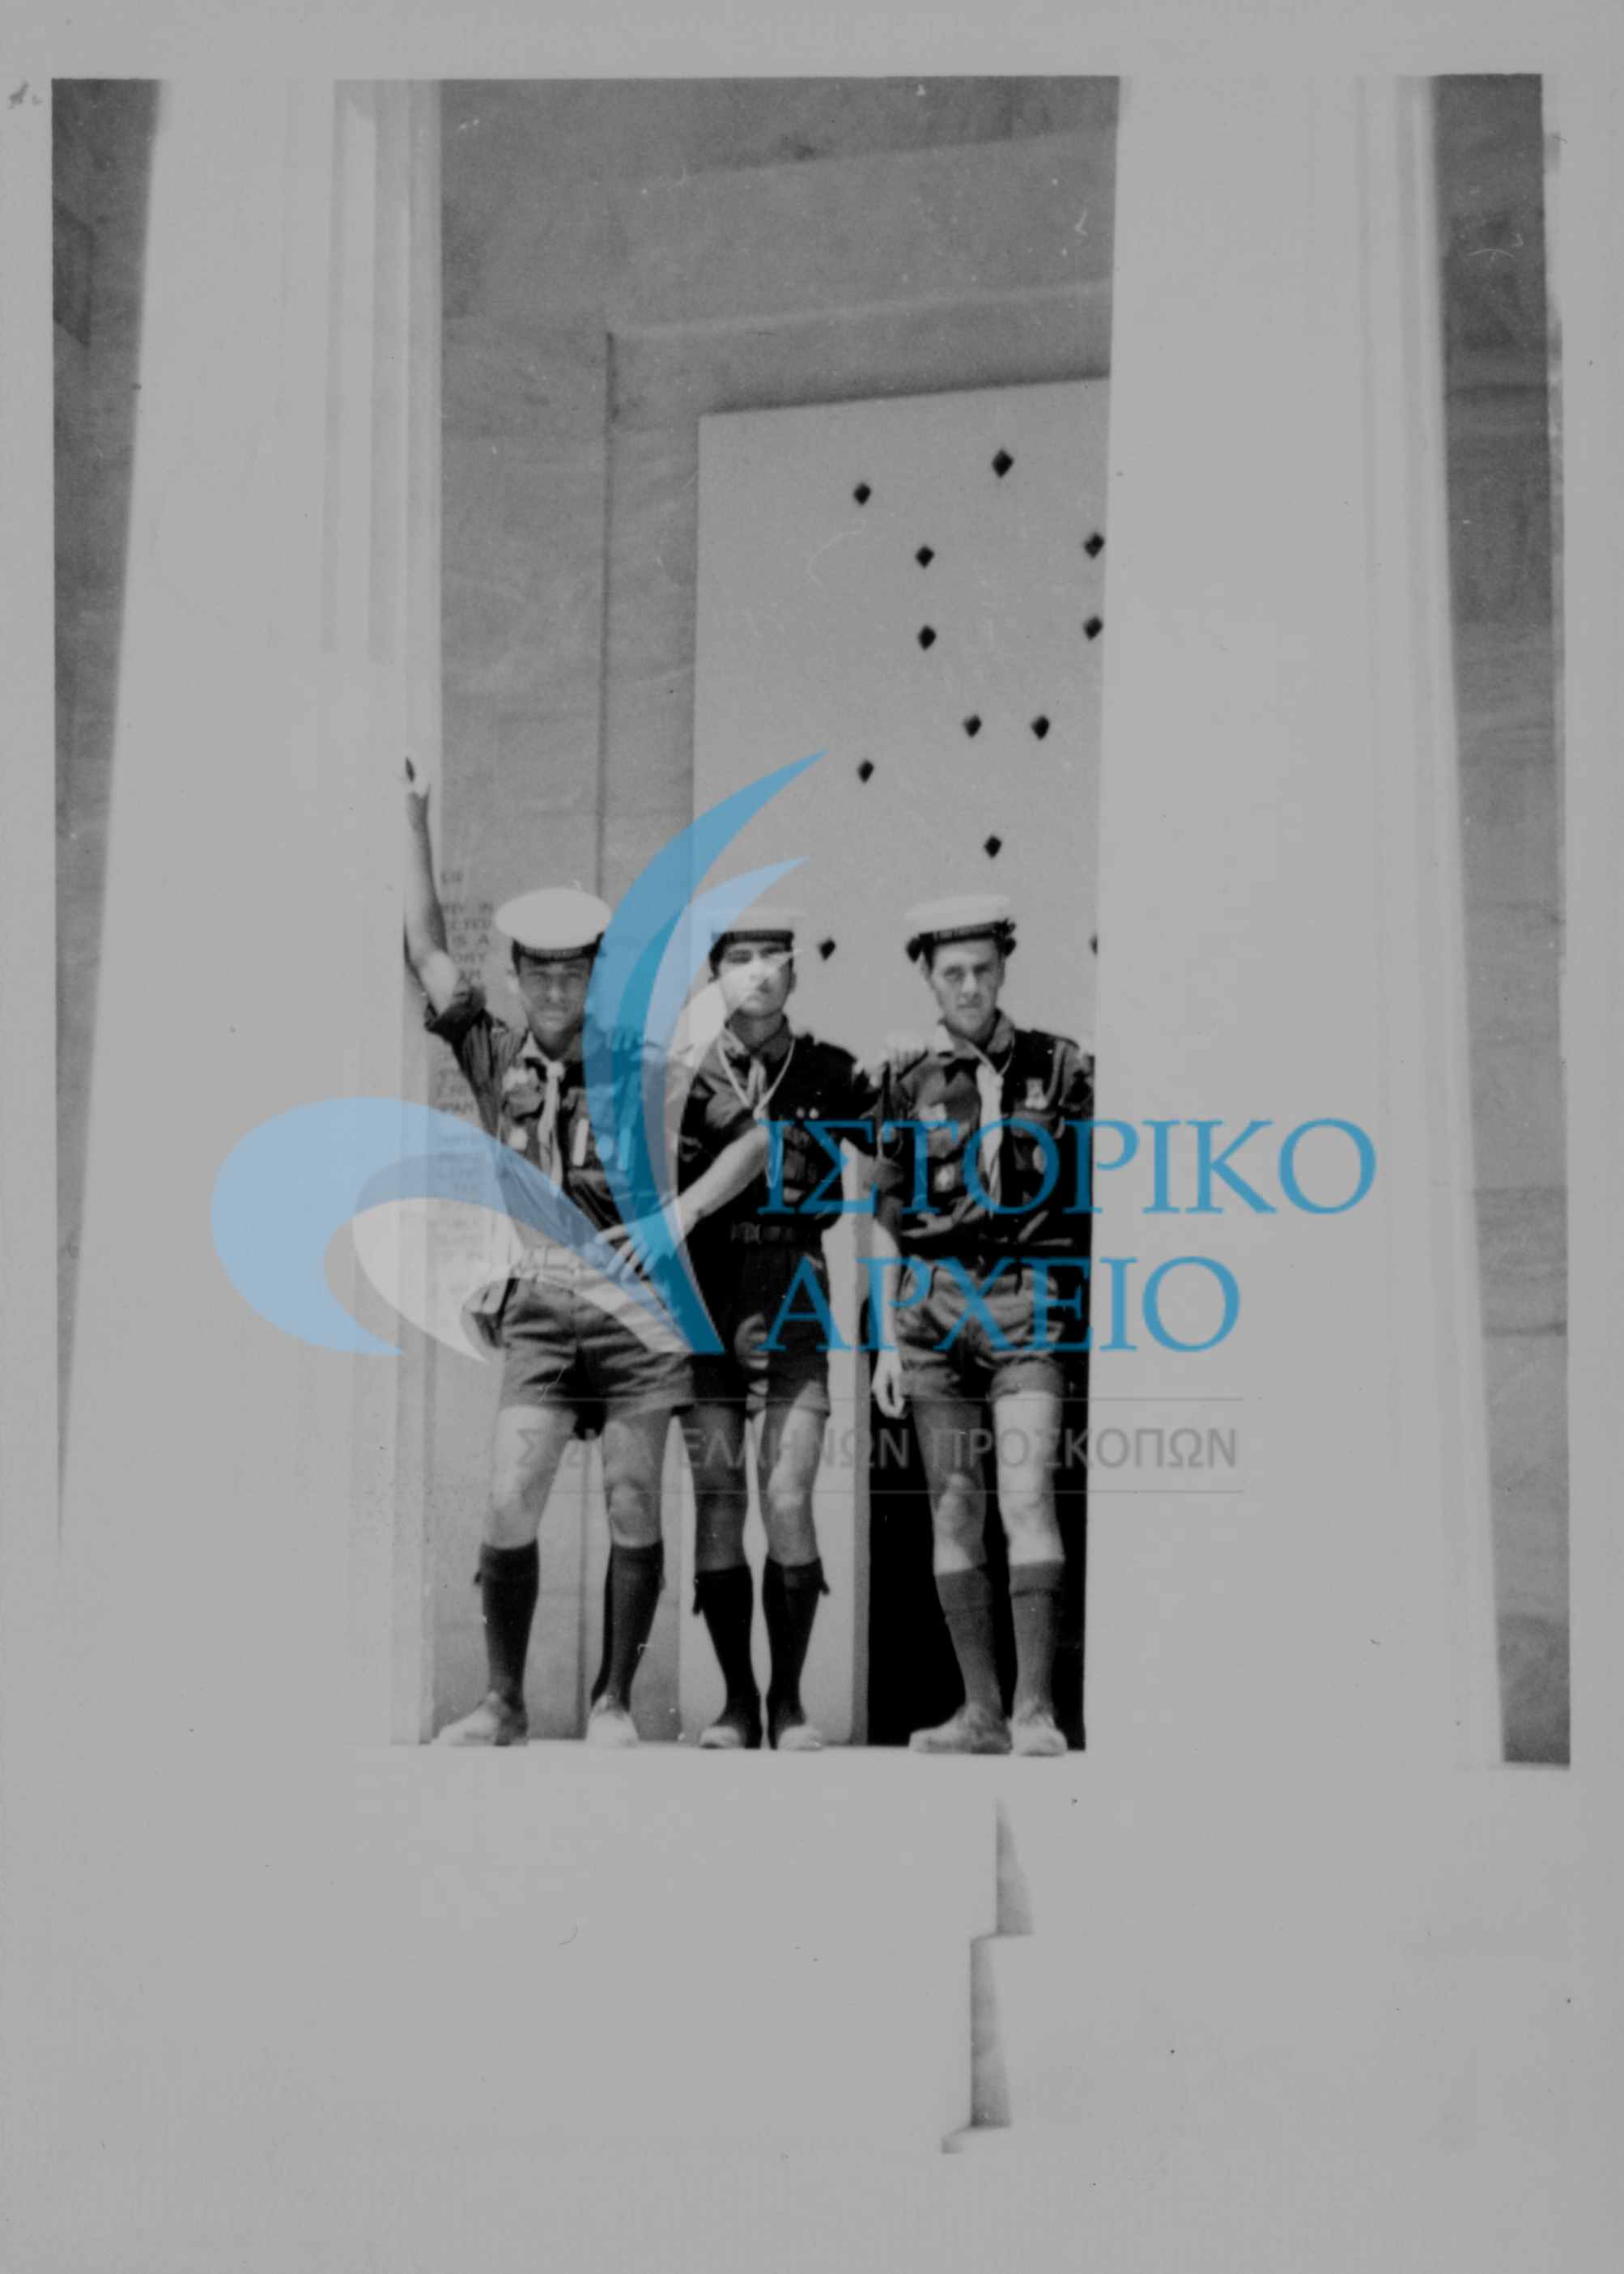 Έλληνες πρόσκοποι του Λιβάνου σε εκδρομή στο Μνημείο δίπλα στο Φράγμα του Μαραθώνα στην διάρκεια του 11ου Τζάμπορη το 1963.